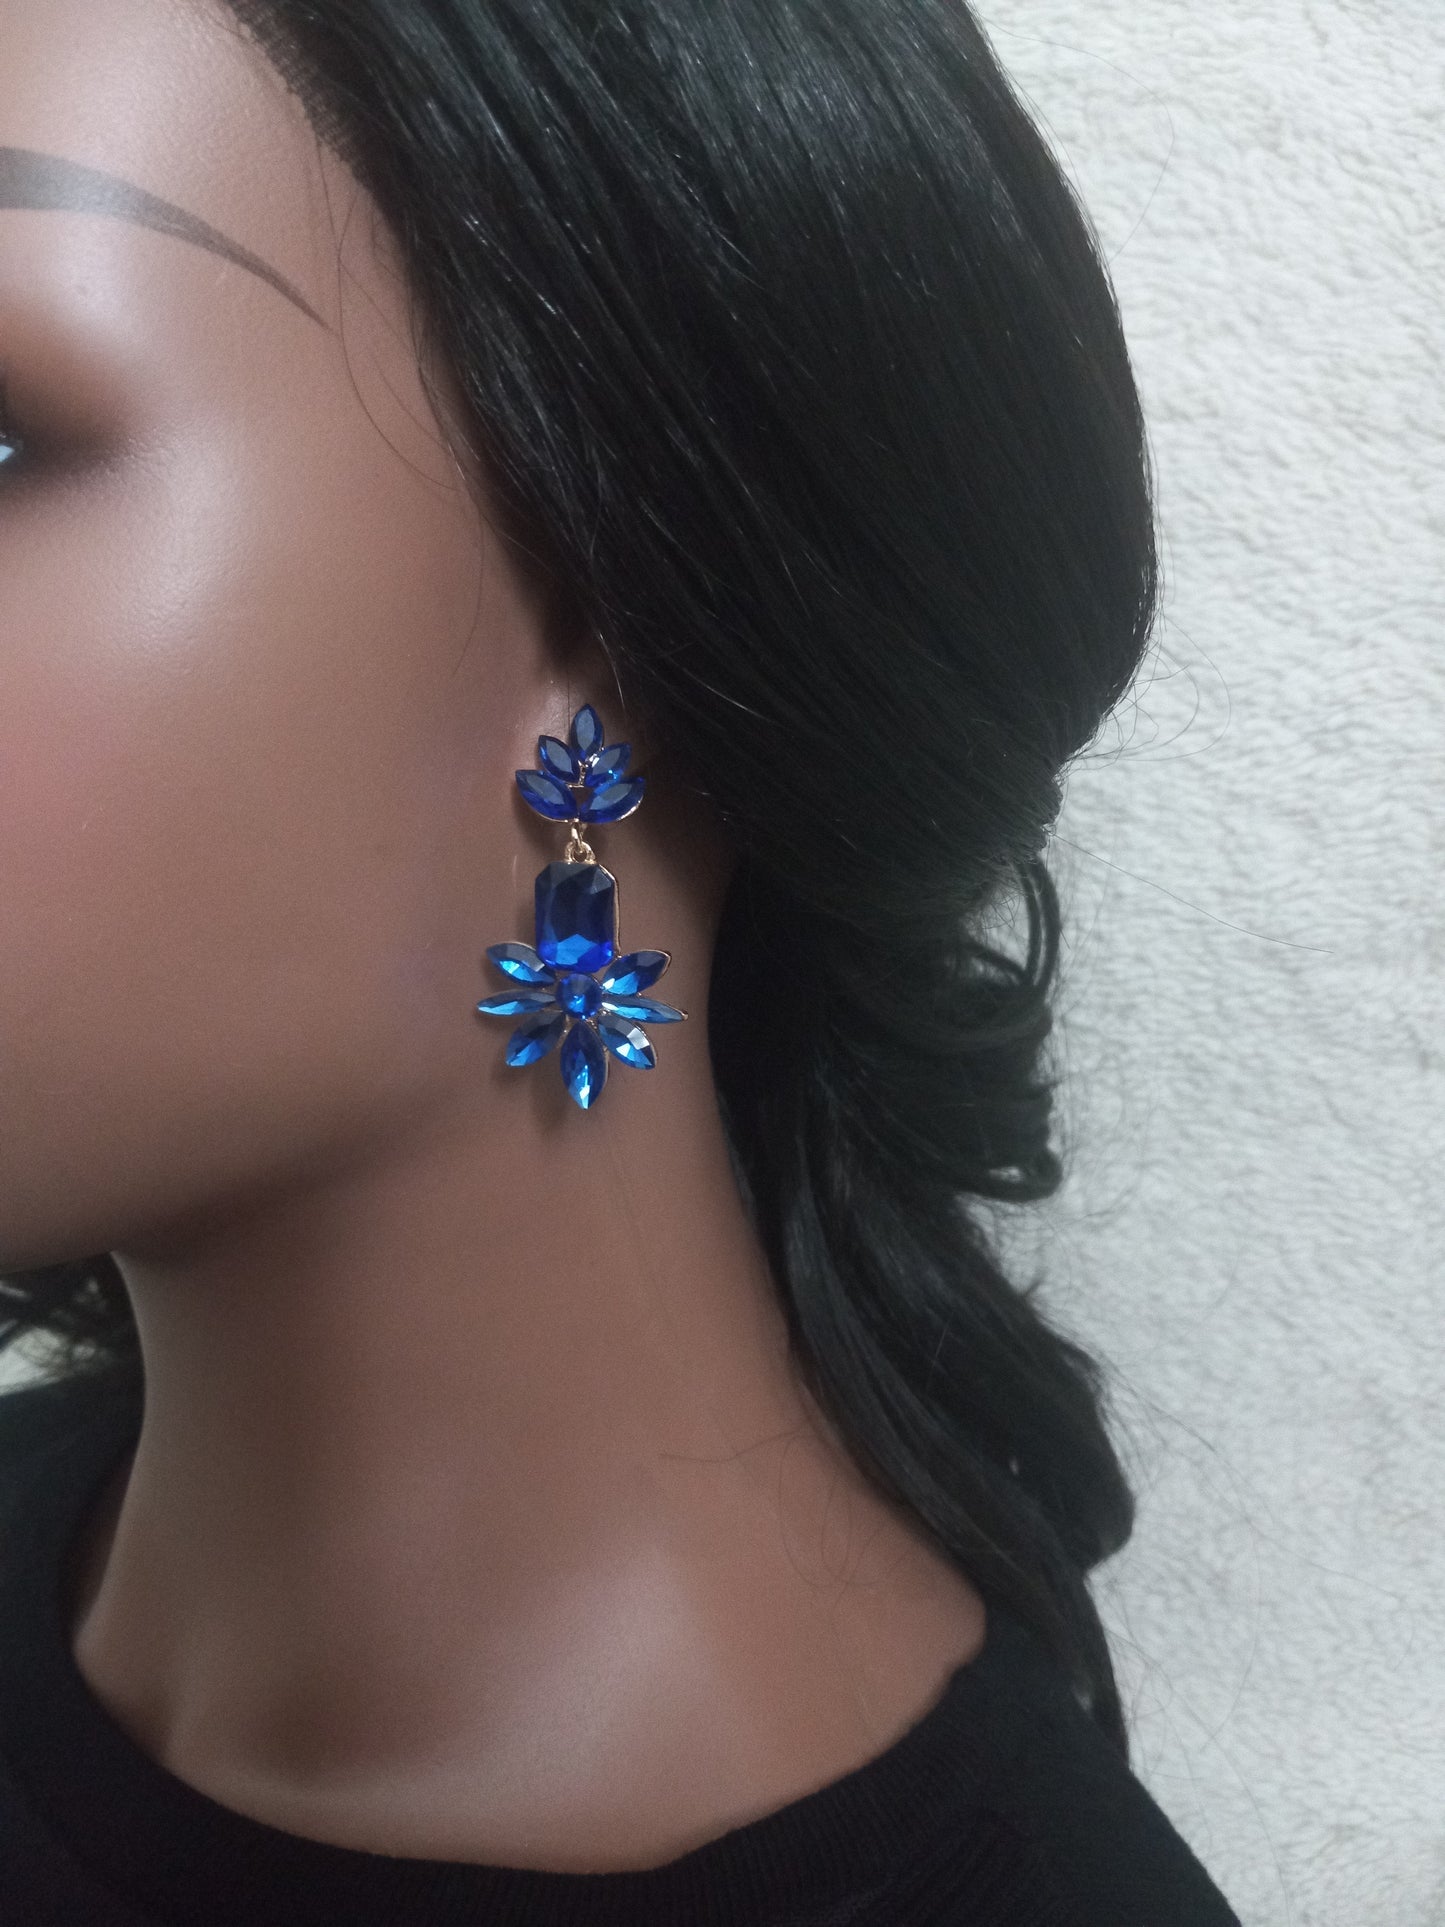 Luscious earrings